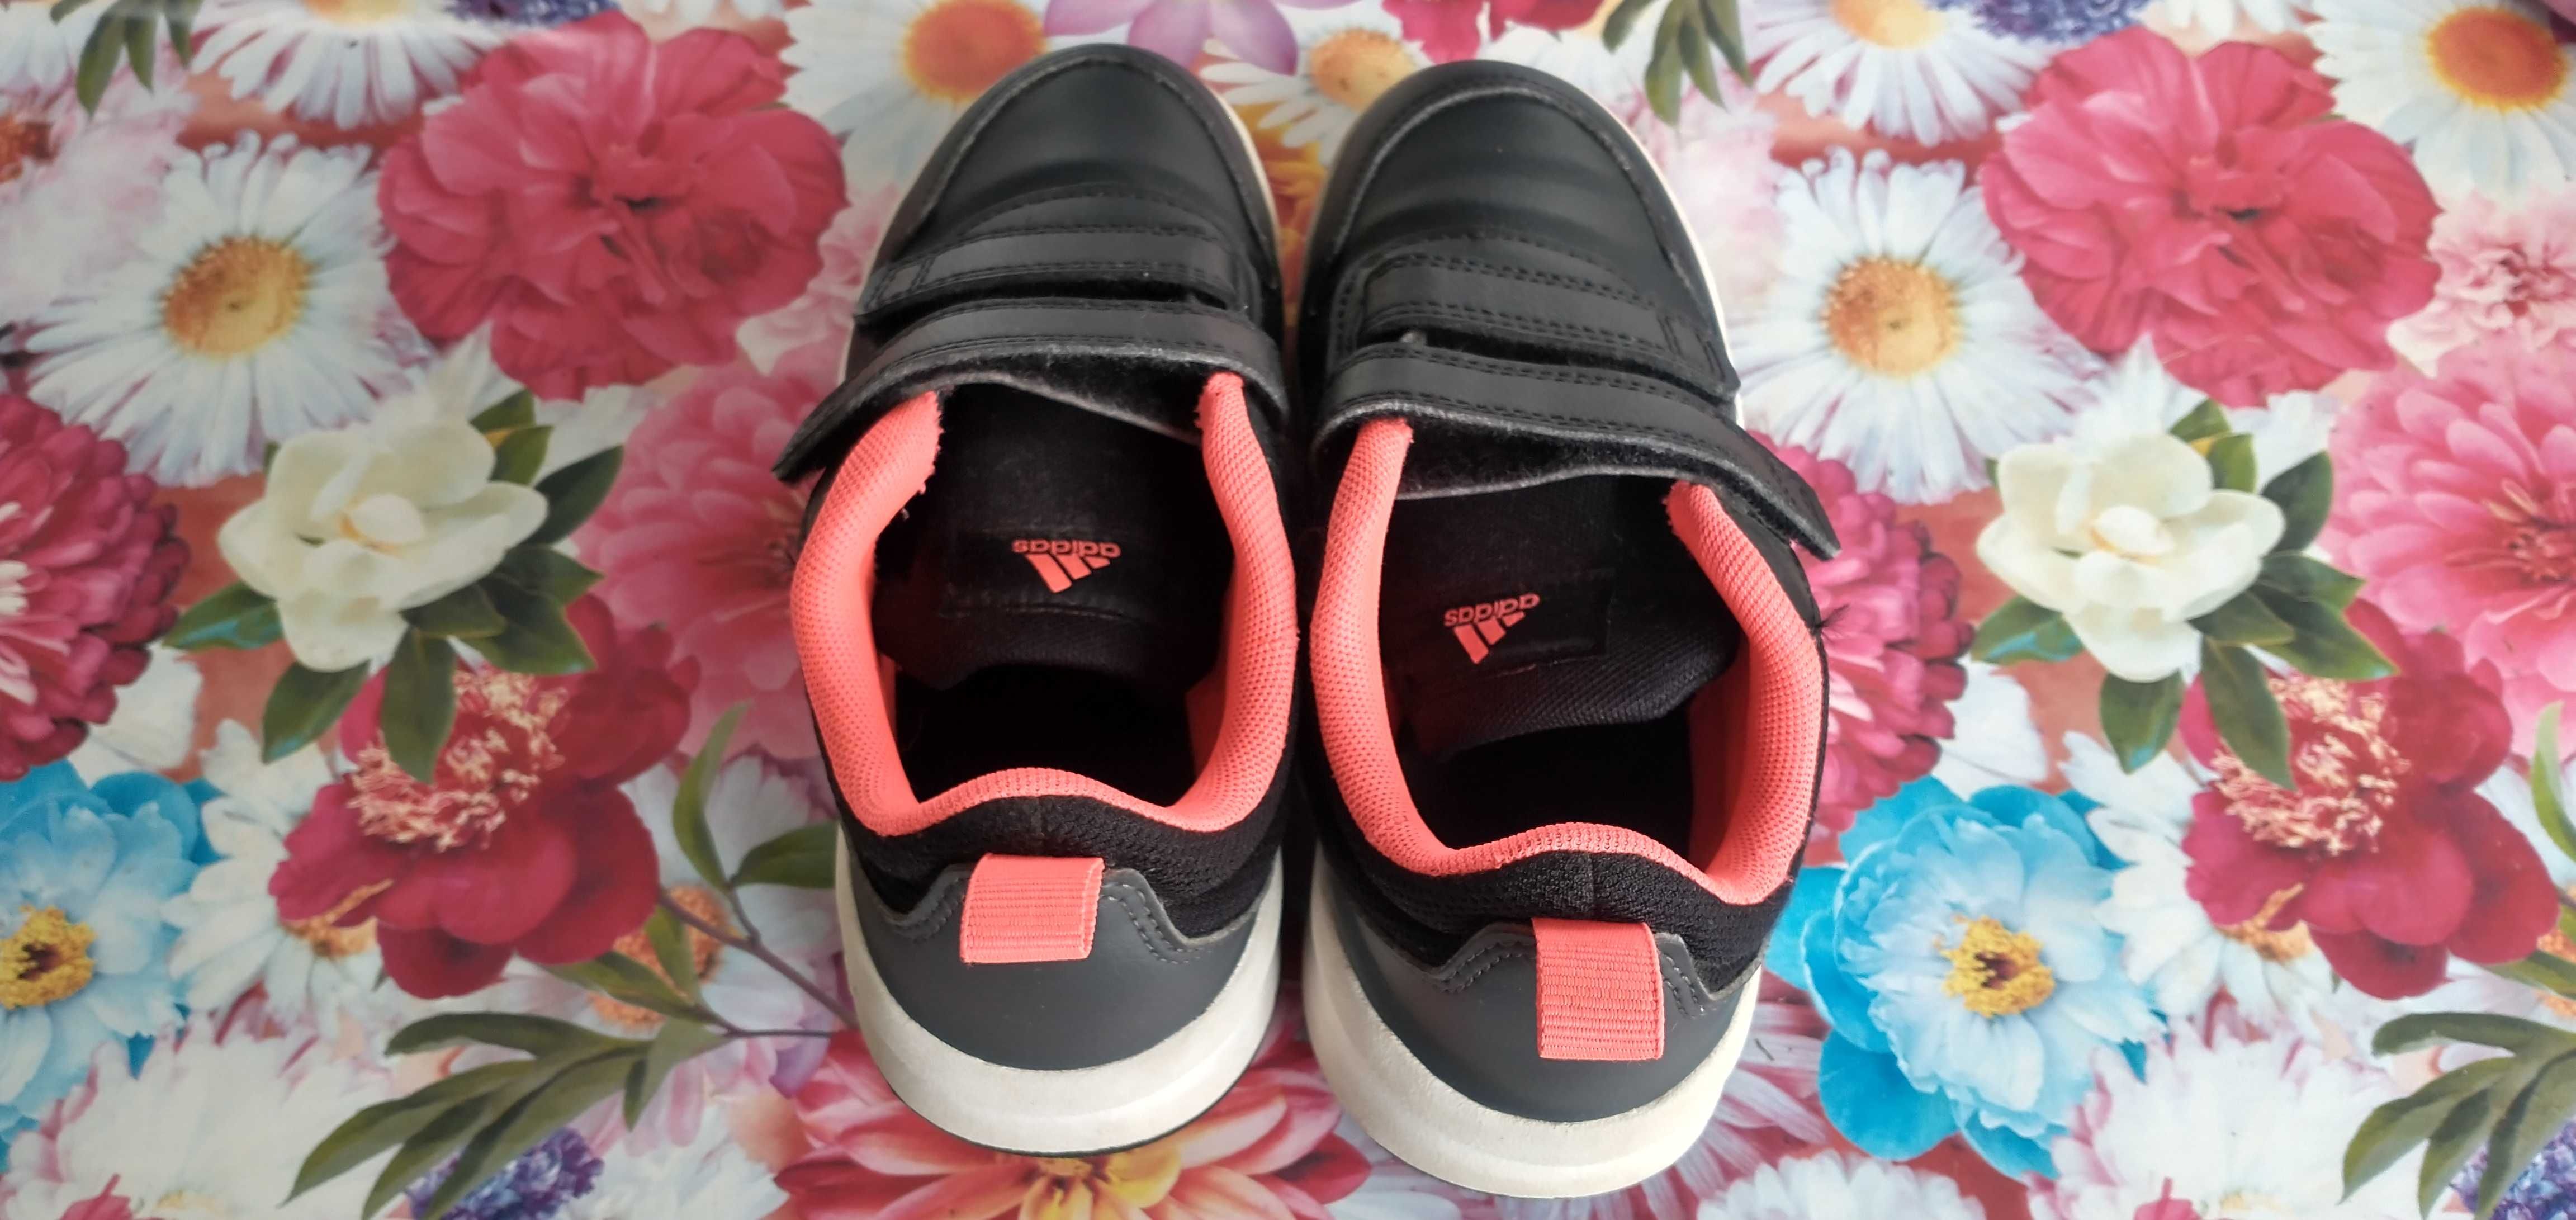 Vand pantofi sport marca Adidas pentru copii -marimea 30